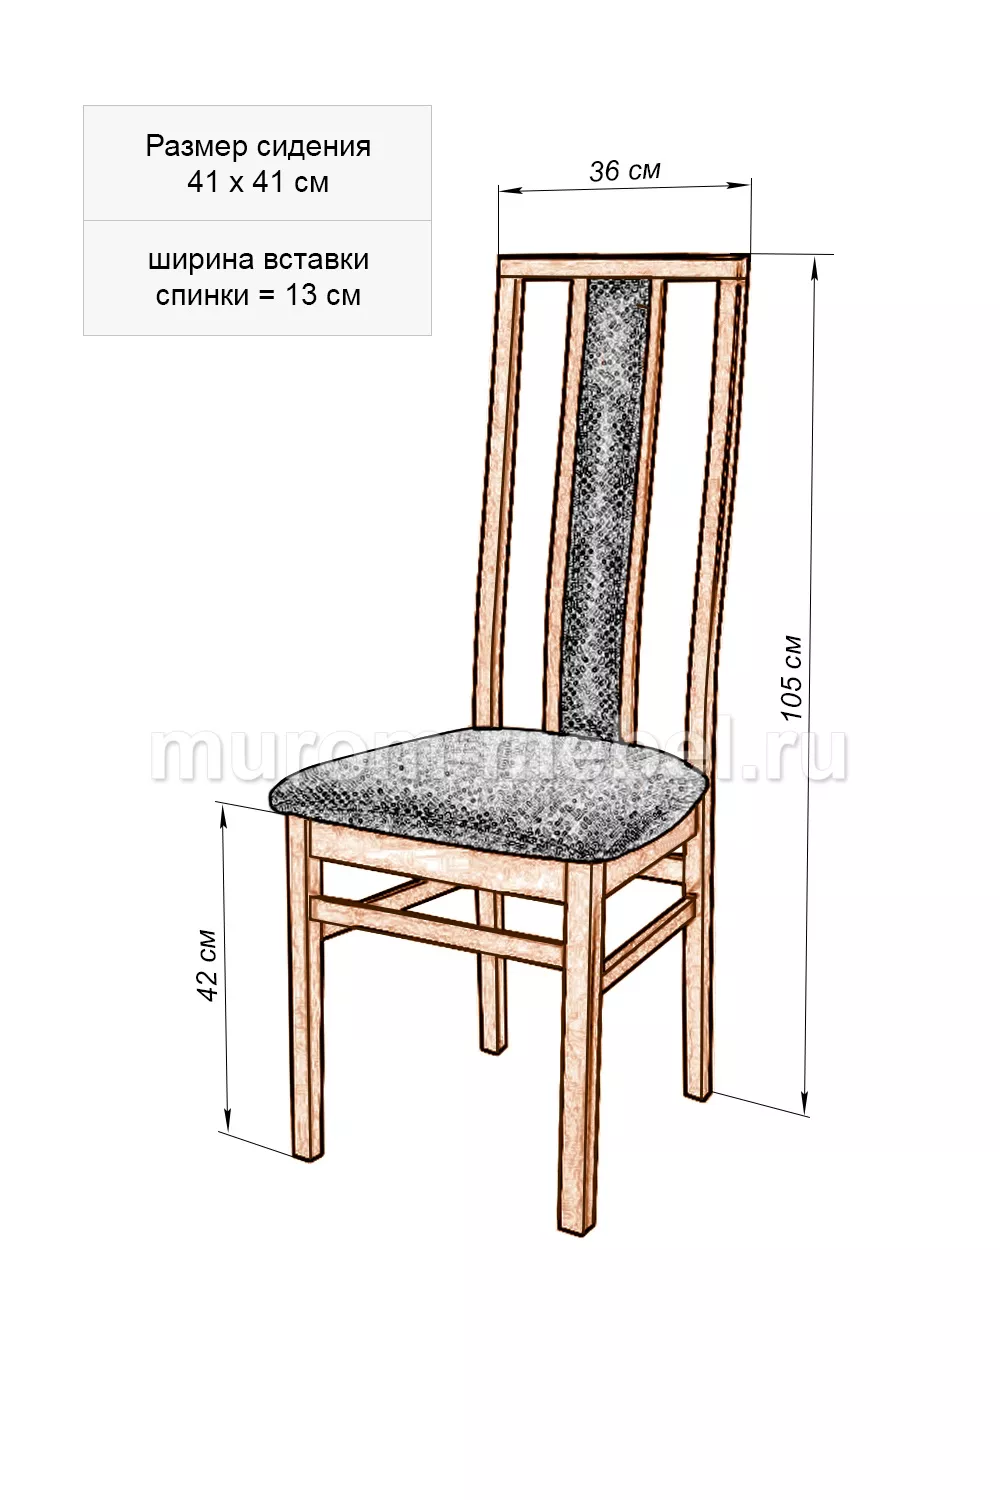 Стандартная высота письменного стола и стула для школьника: ГОСТы и нормы